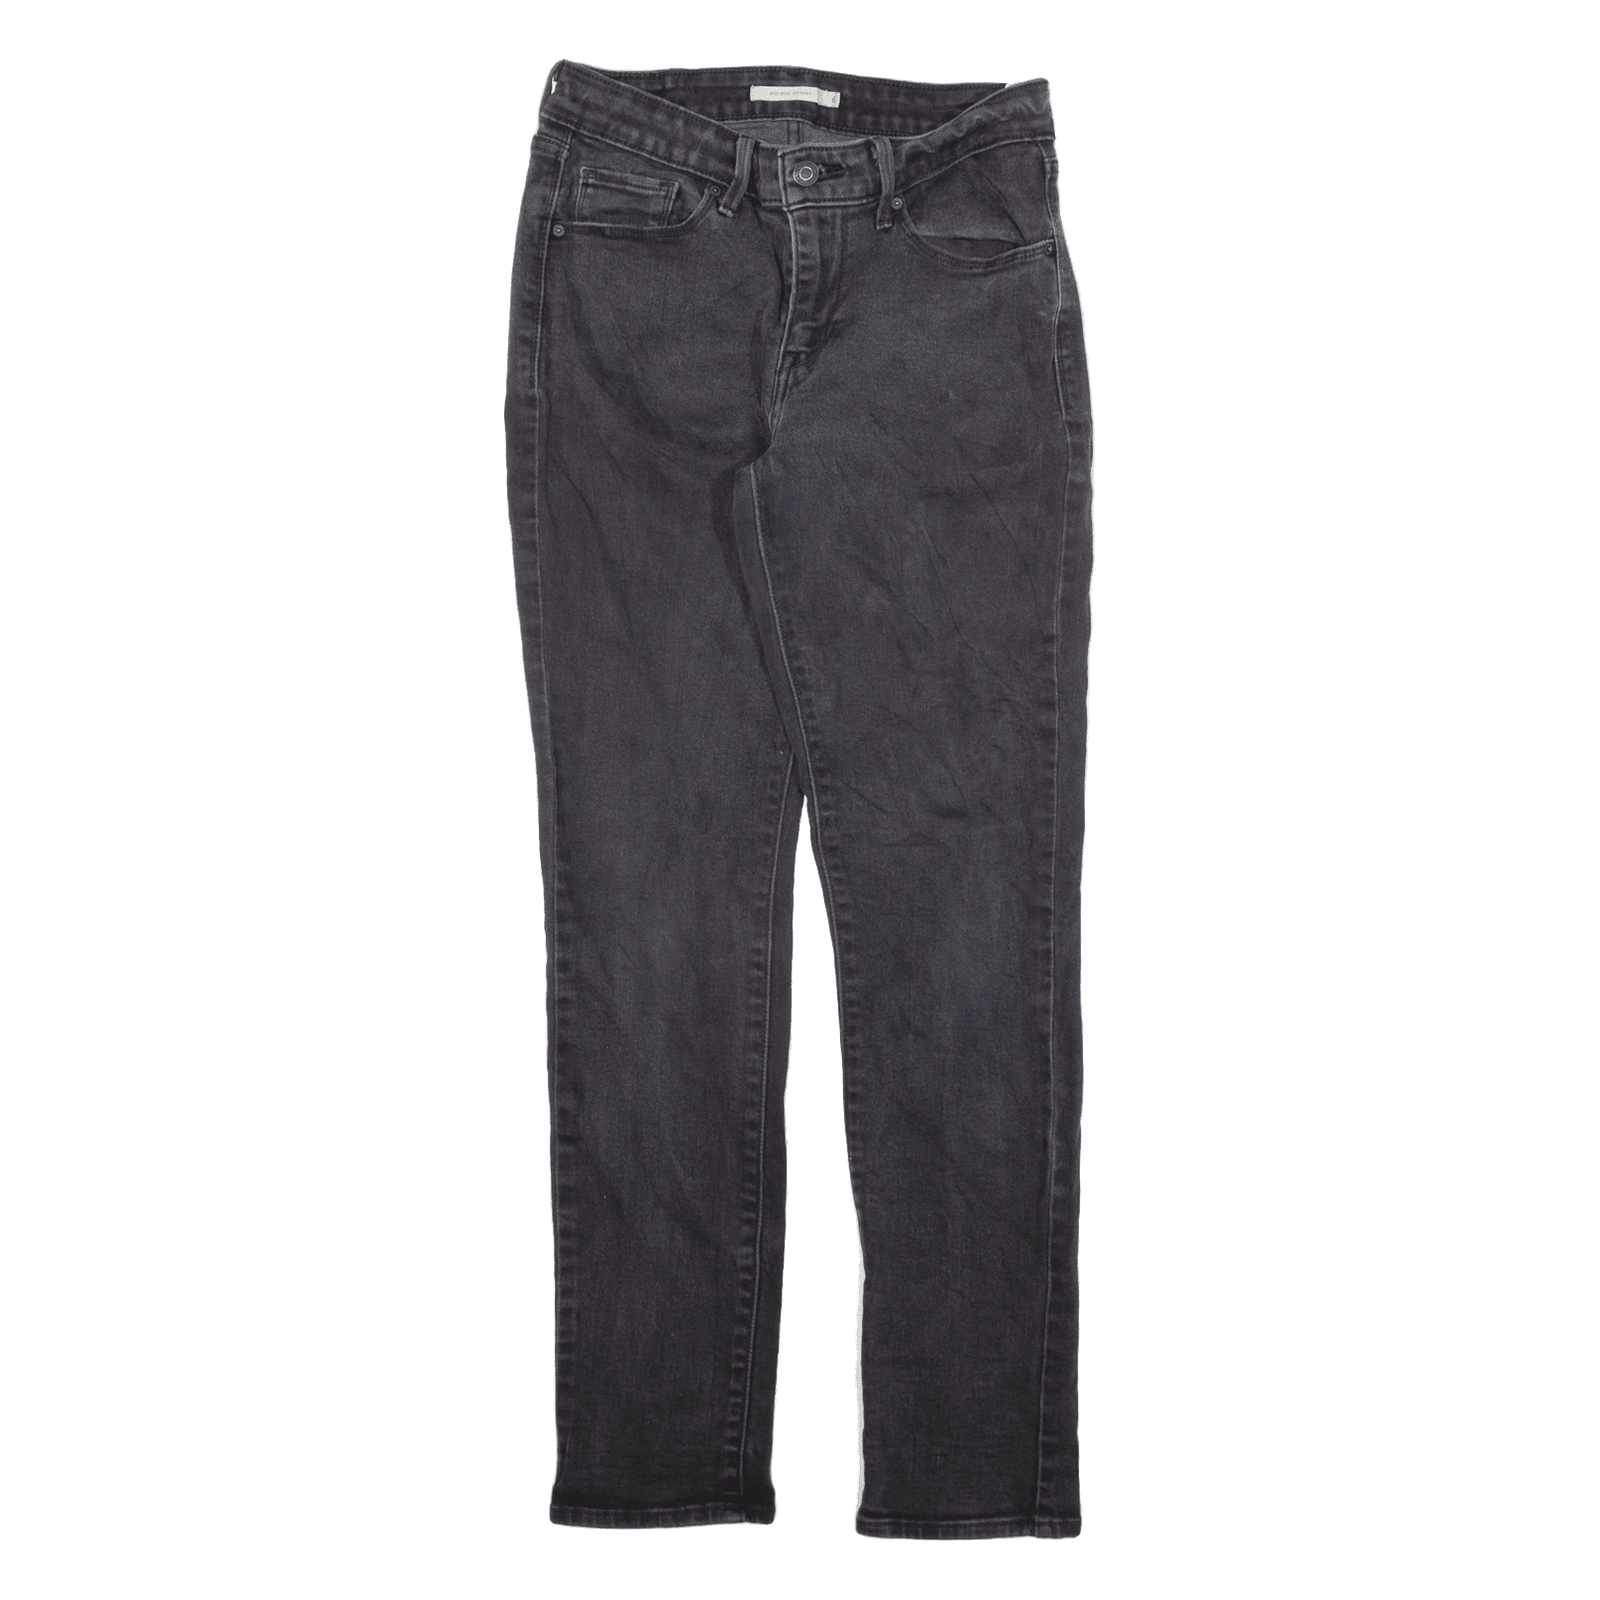 LEVI'S Mid Rise Jeans Black Denim Slim Skinny Womens W28 L30